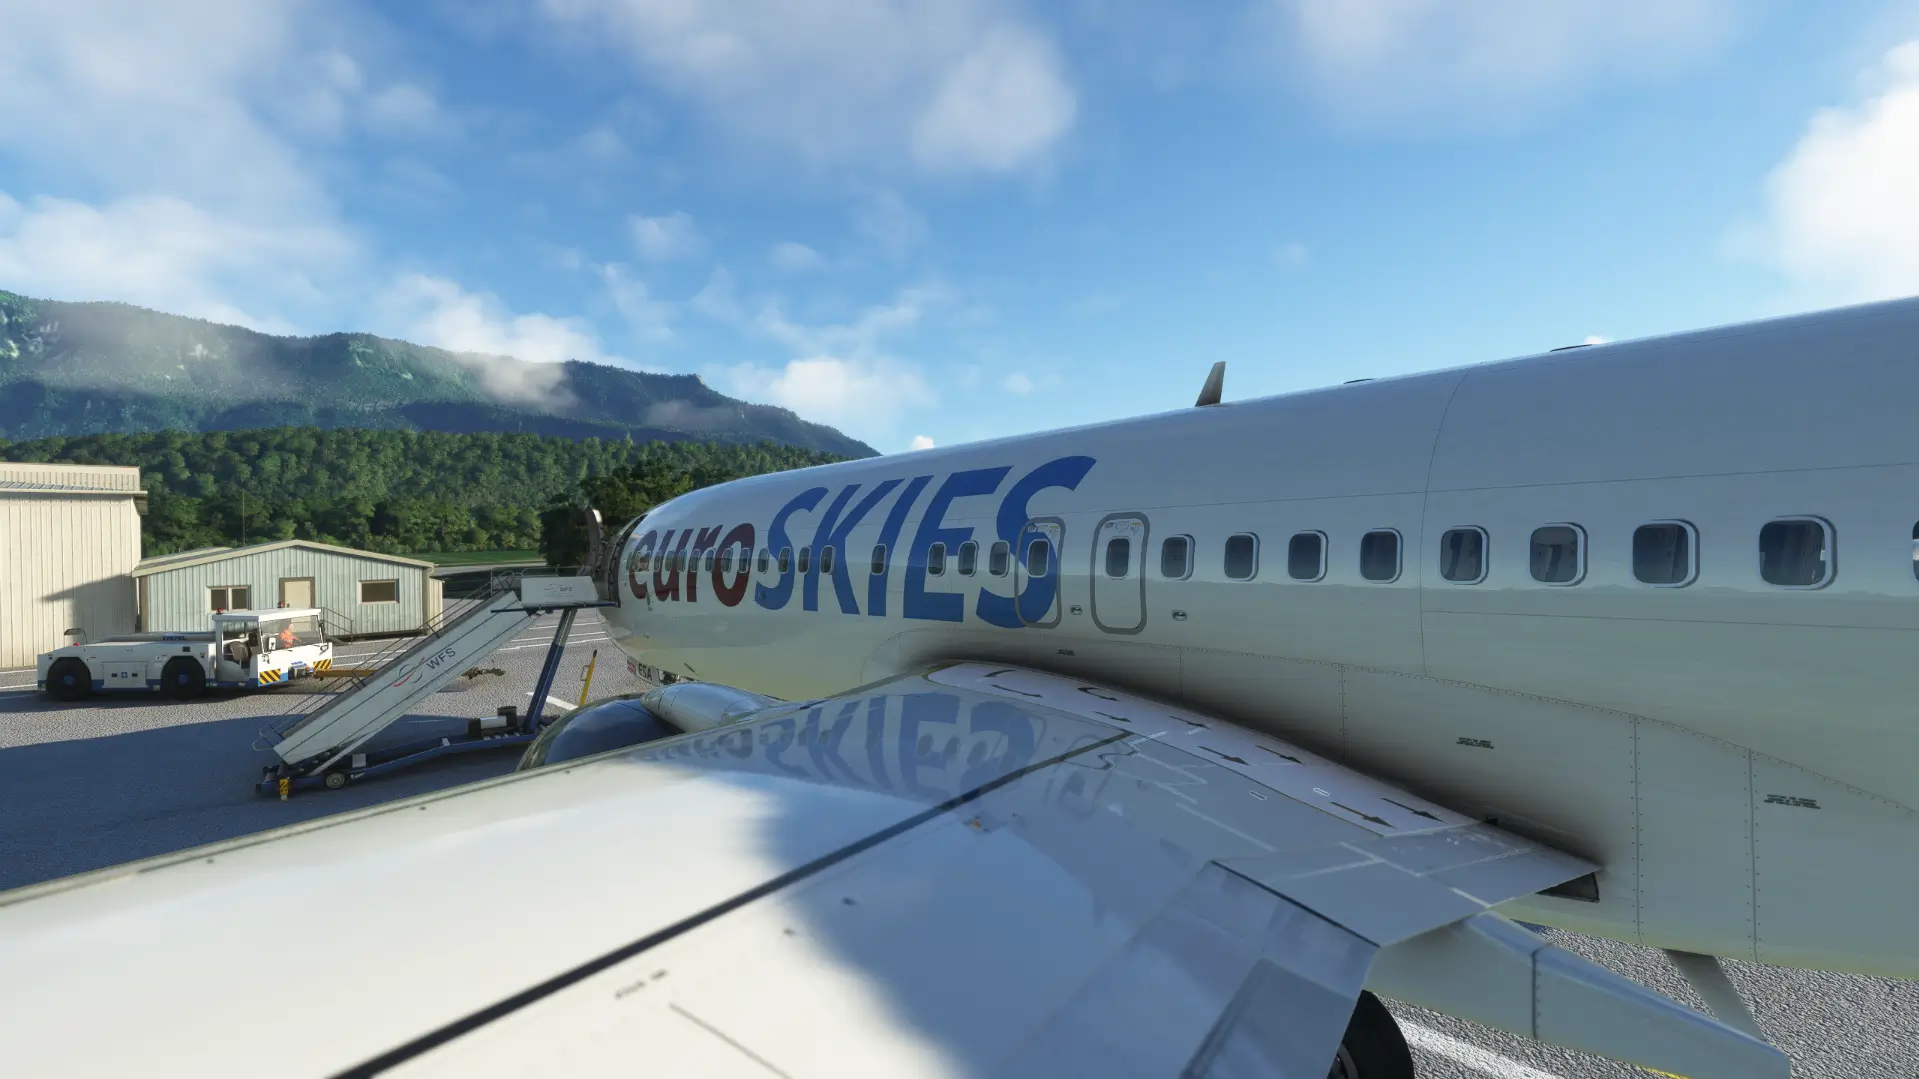 EuroSKIES virtuelles Flugzeug steht am Boden mit Treppenanschluss auf dem Vorfeld, umgeben von Wald und Bergen.